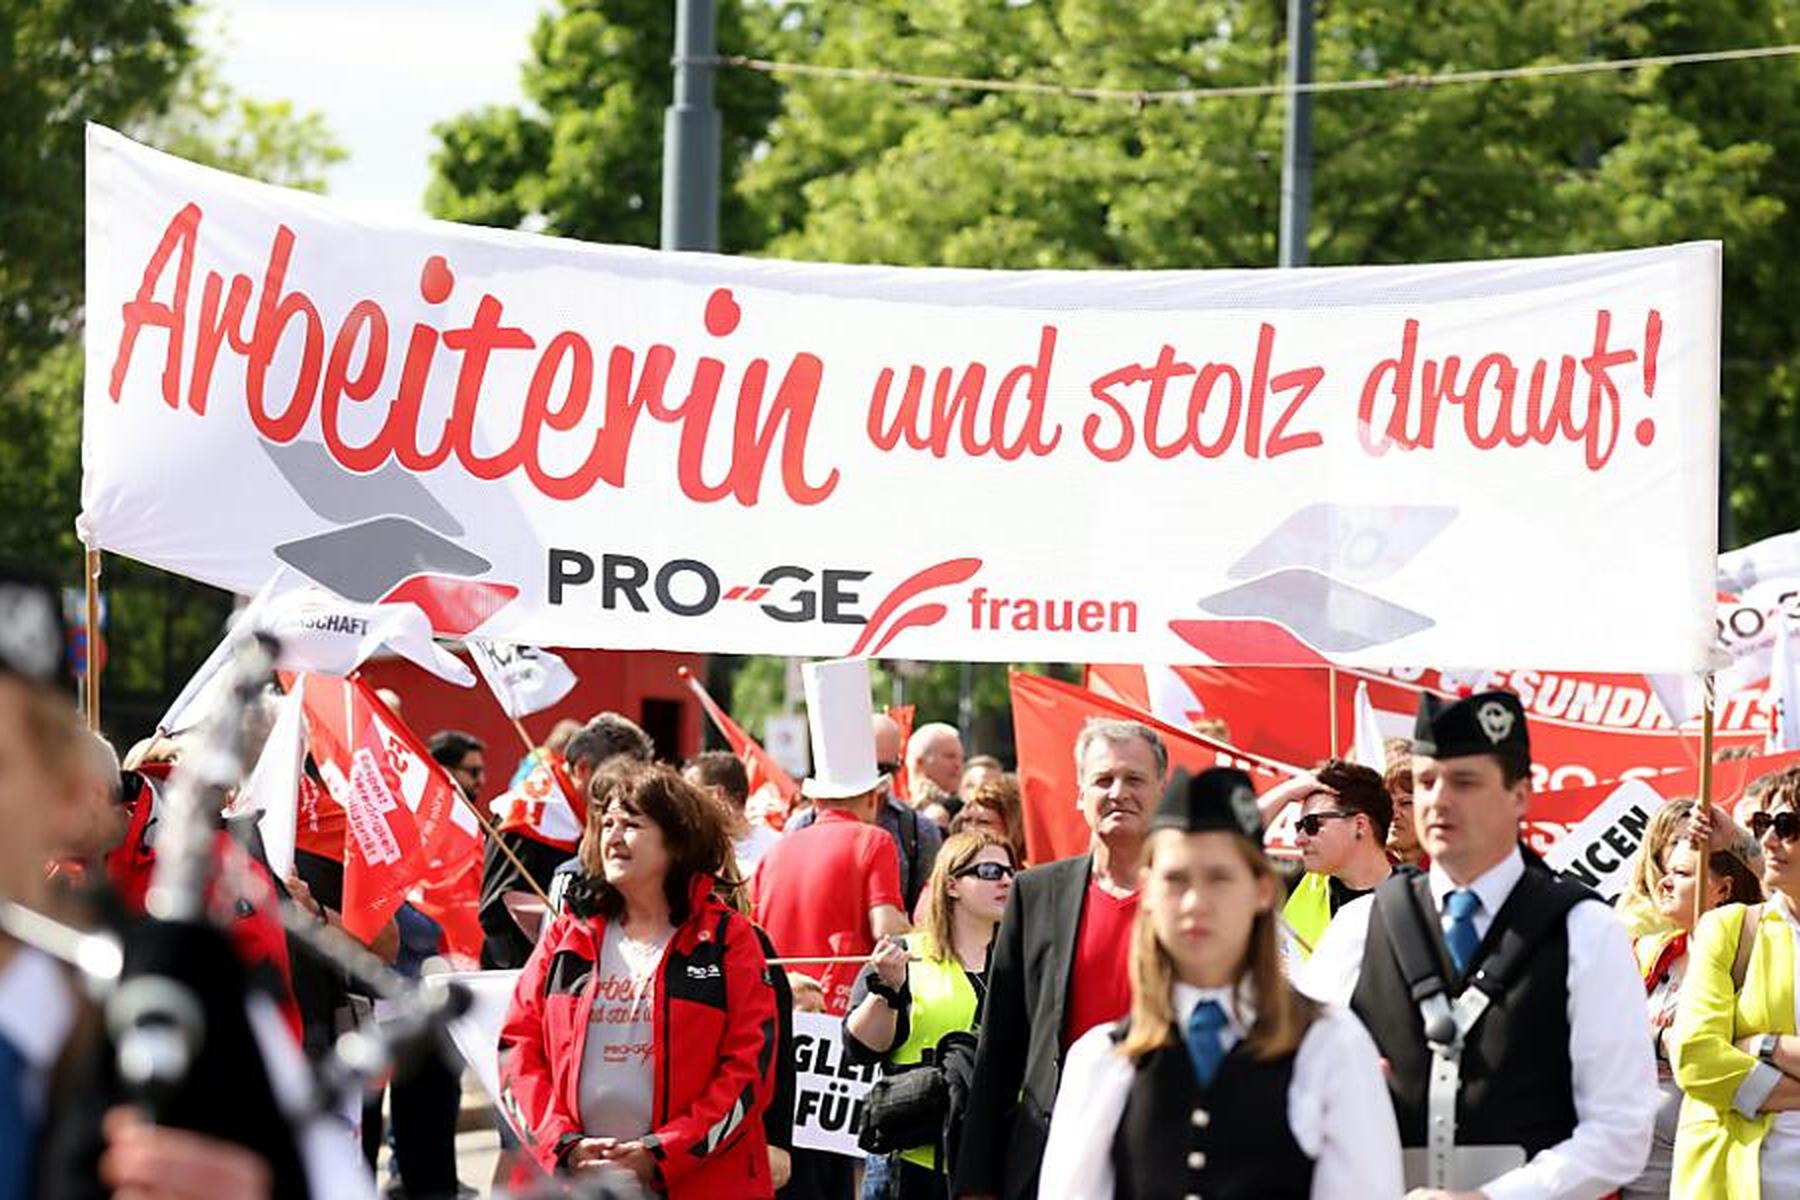 Wien/Linz: SPÖ-Maiaufmarsch in Wien hat begonnen